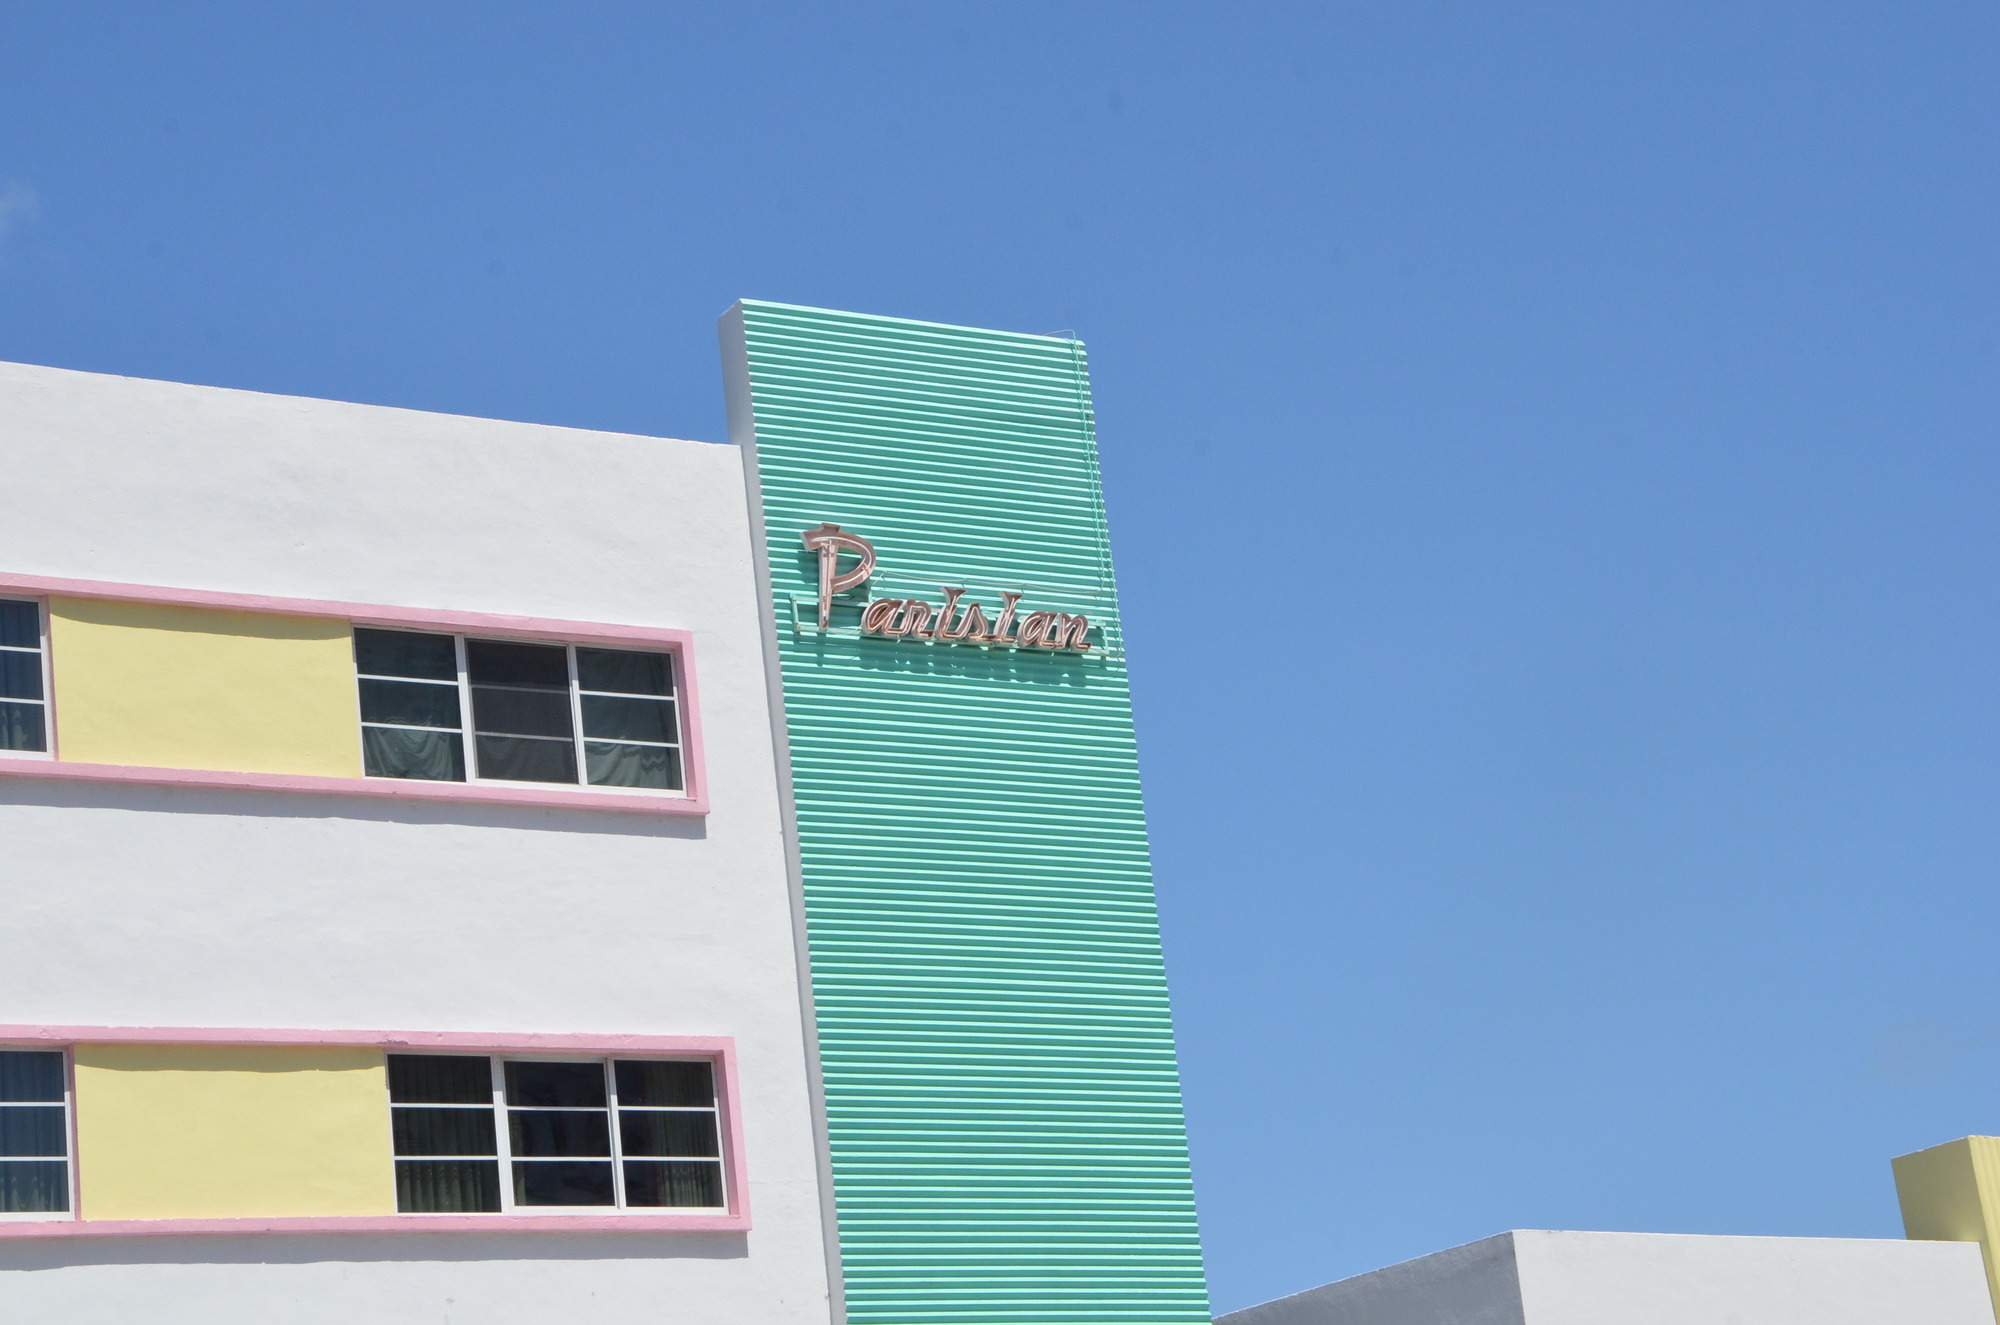 art deco architecture in downtown Miami Beach